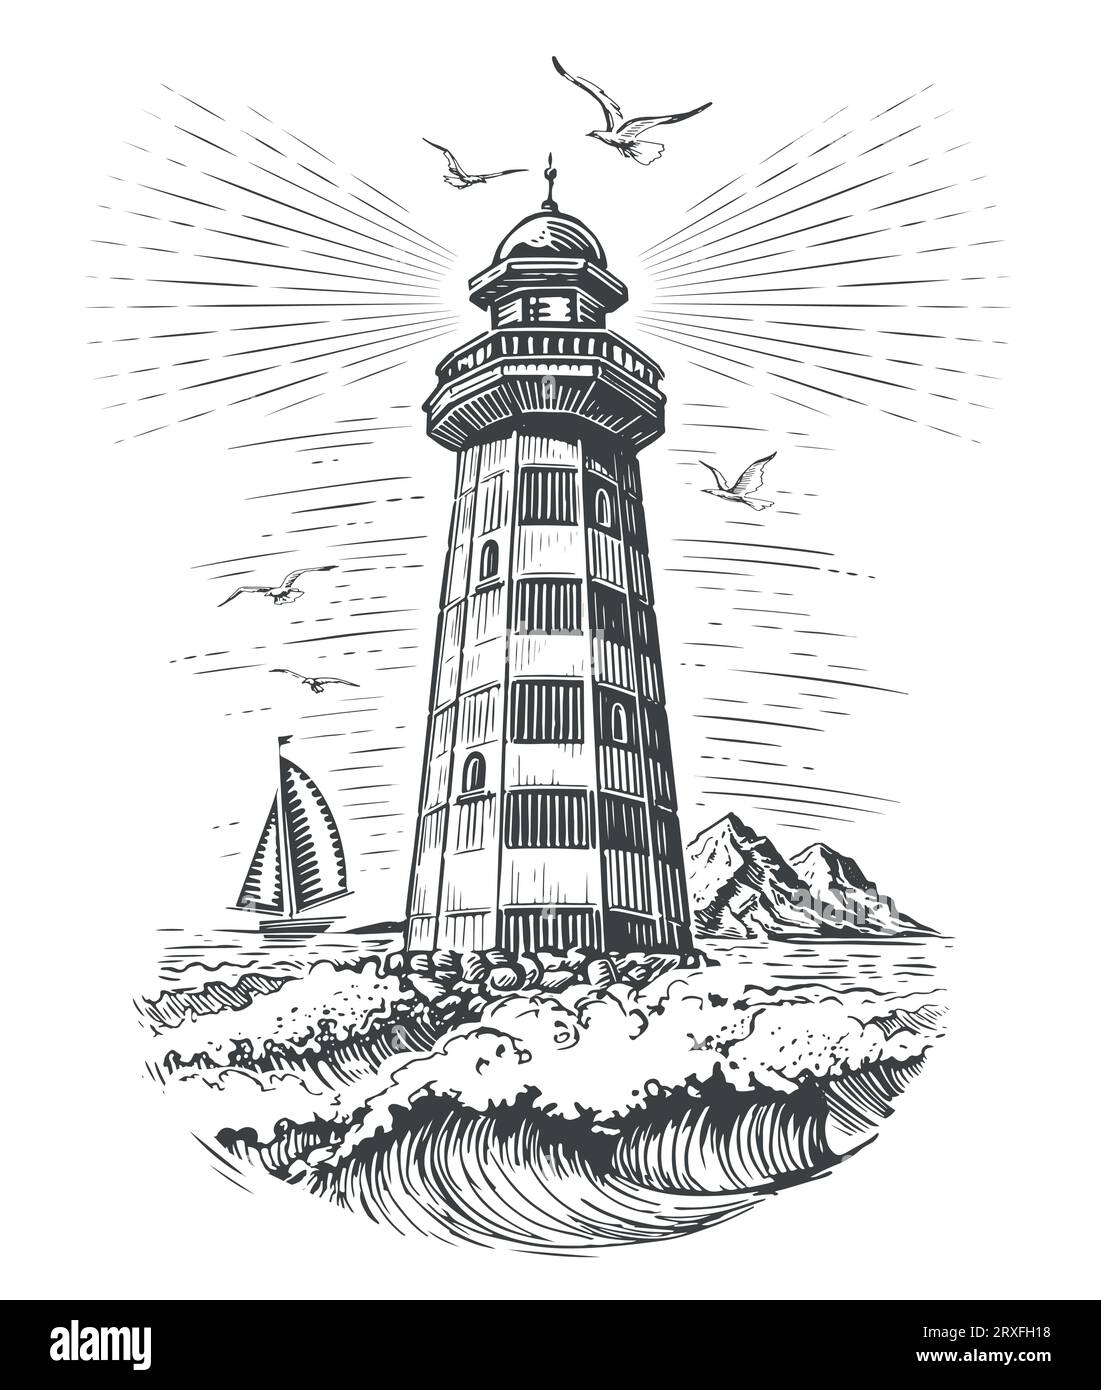 Vieux phare vintage et vagues de la mer. Illustration vectorielle de style gravure Seascape de balise Illustration de Vecteur